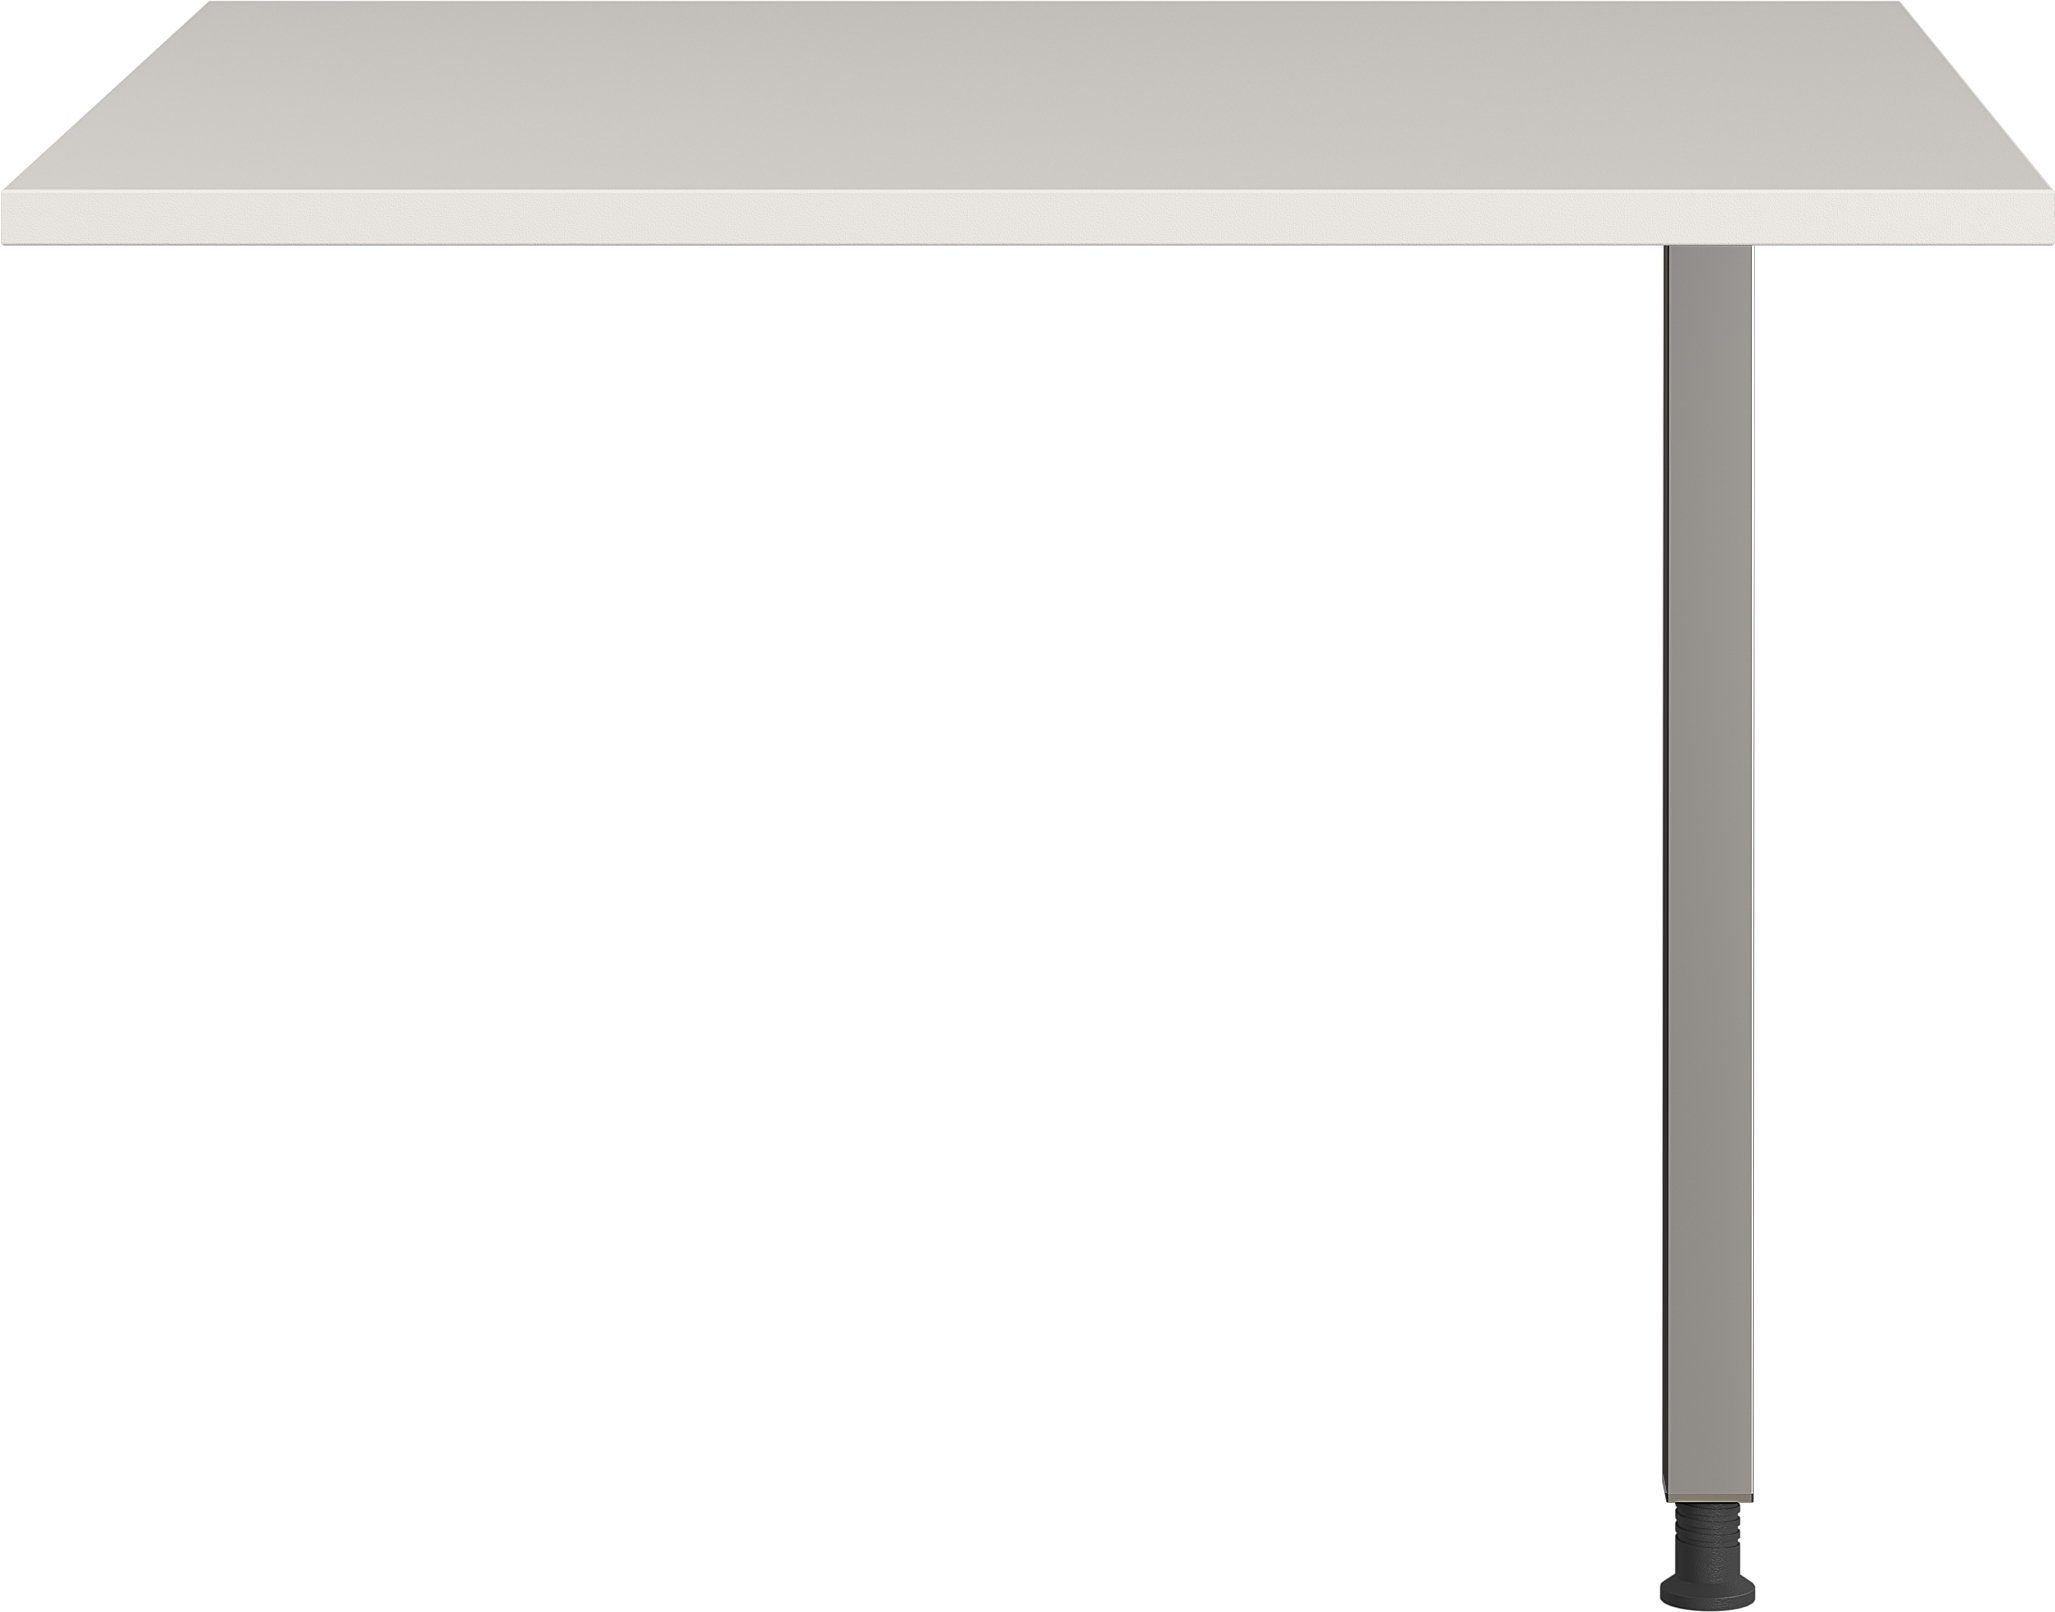 Schreibtisch möbelando (BxHxT: in cm), grau, silber 416 80x80x80